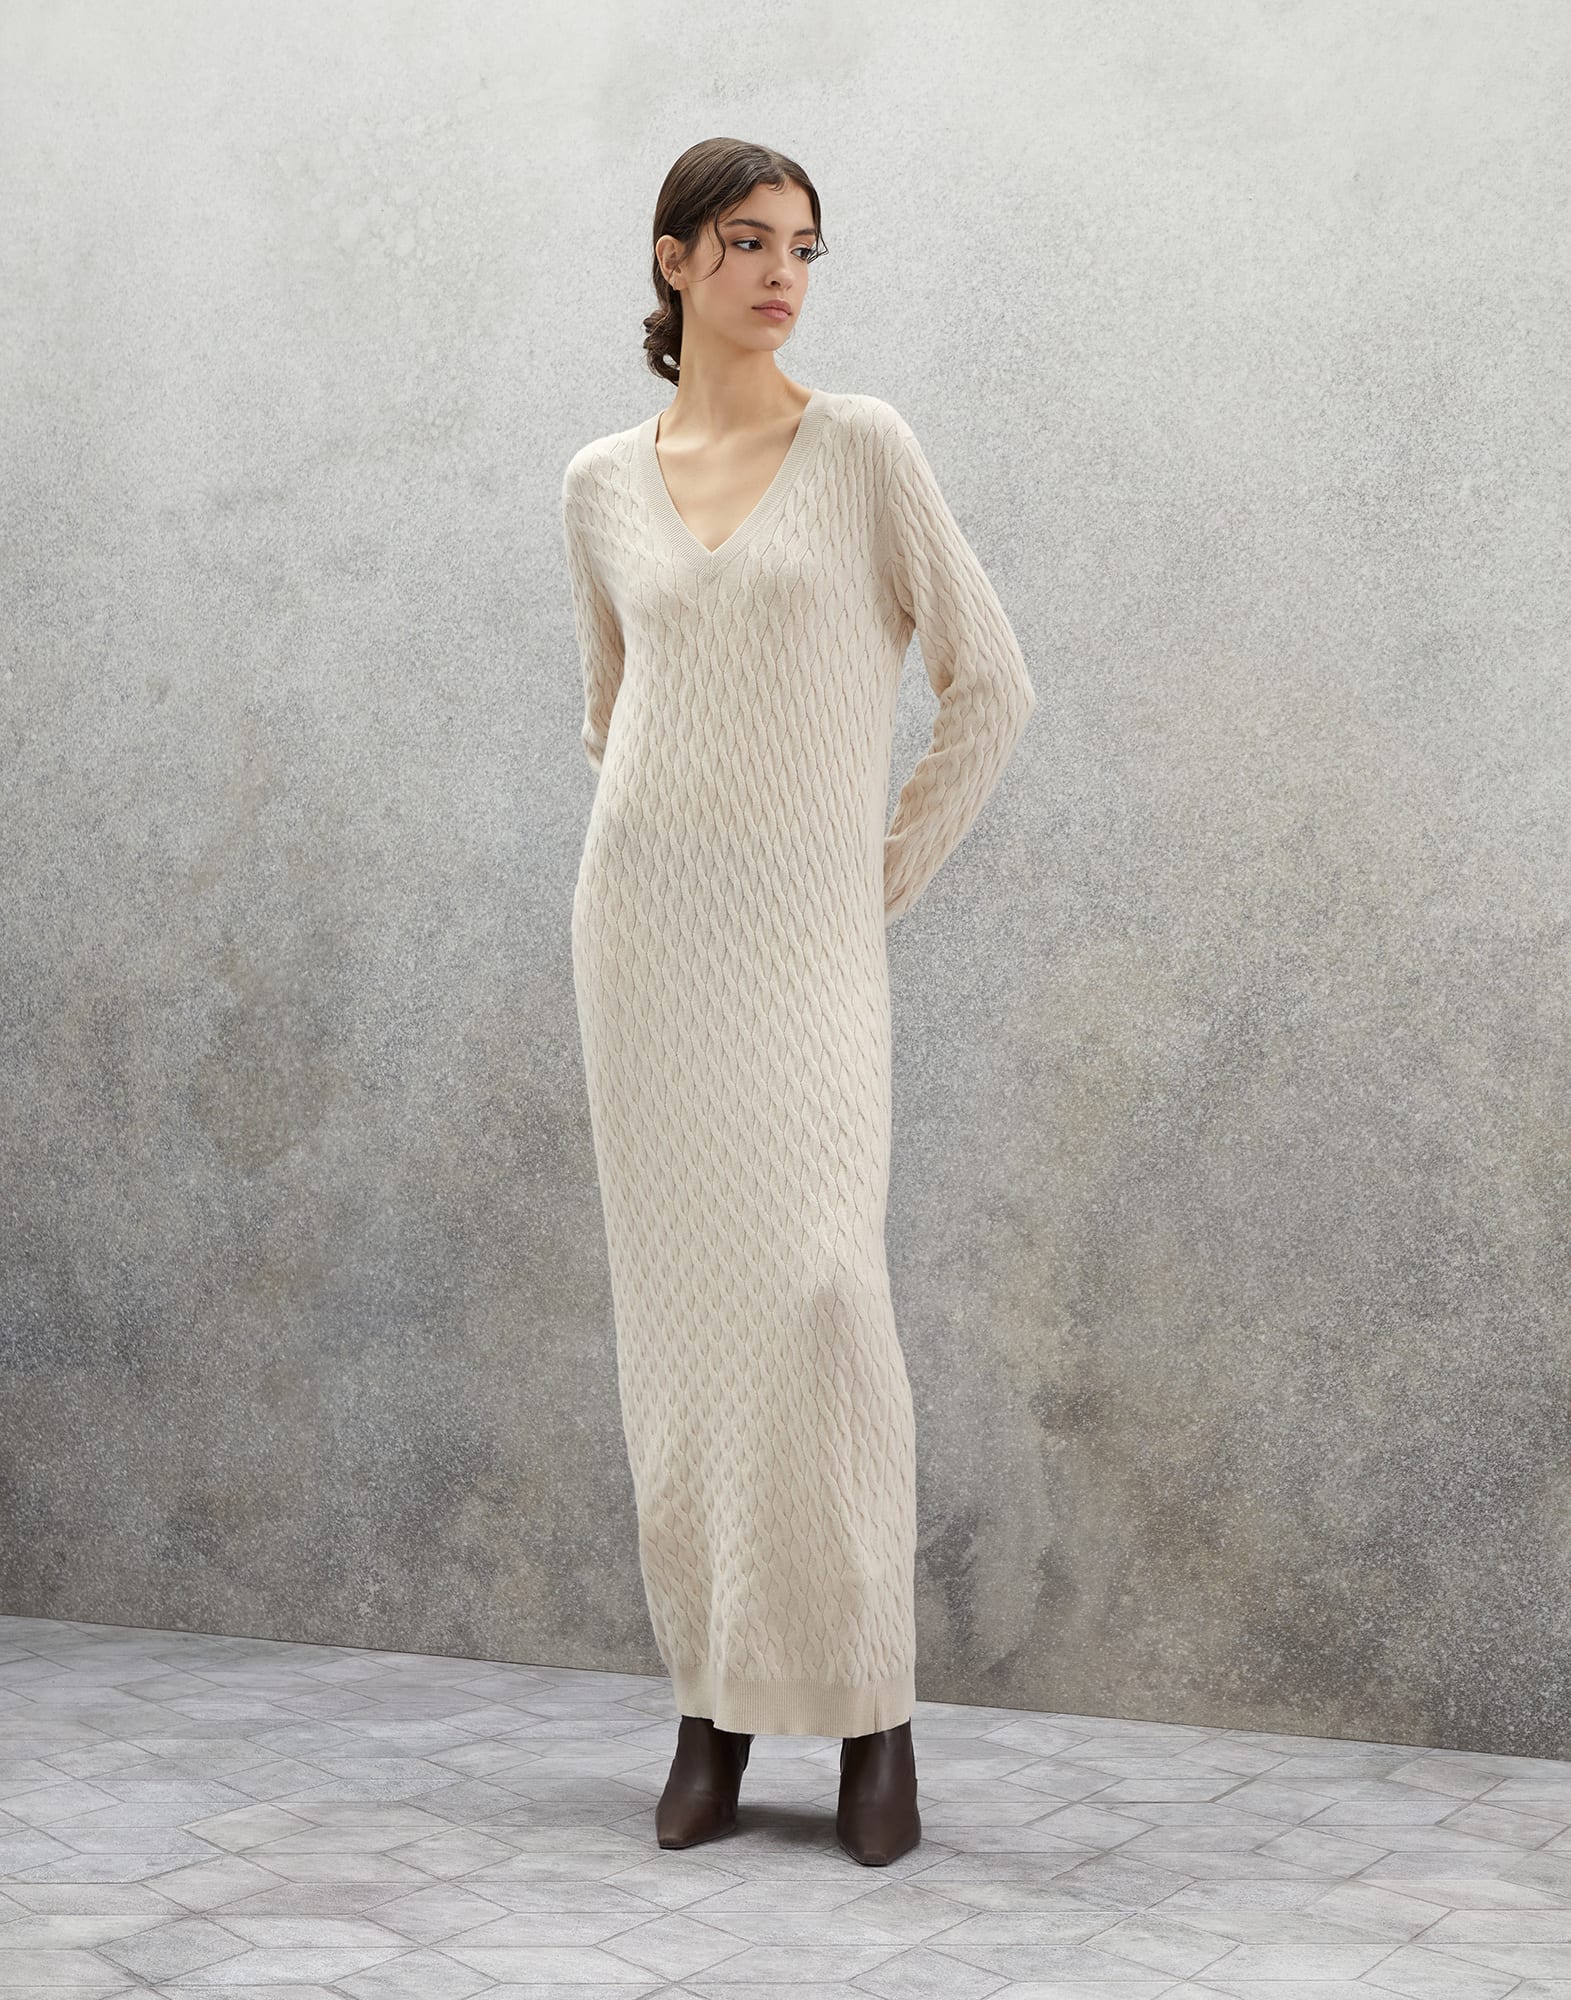 Knit dress Beige Woman -
                        Brunello Cucinelli
                    